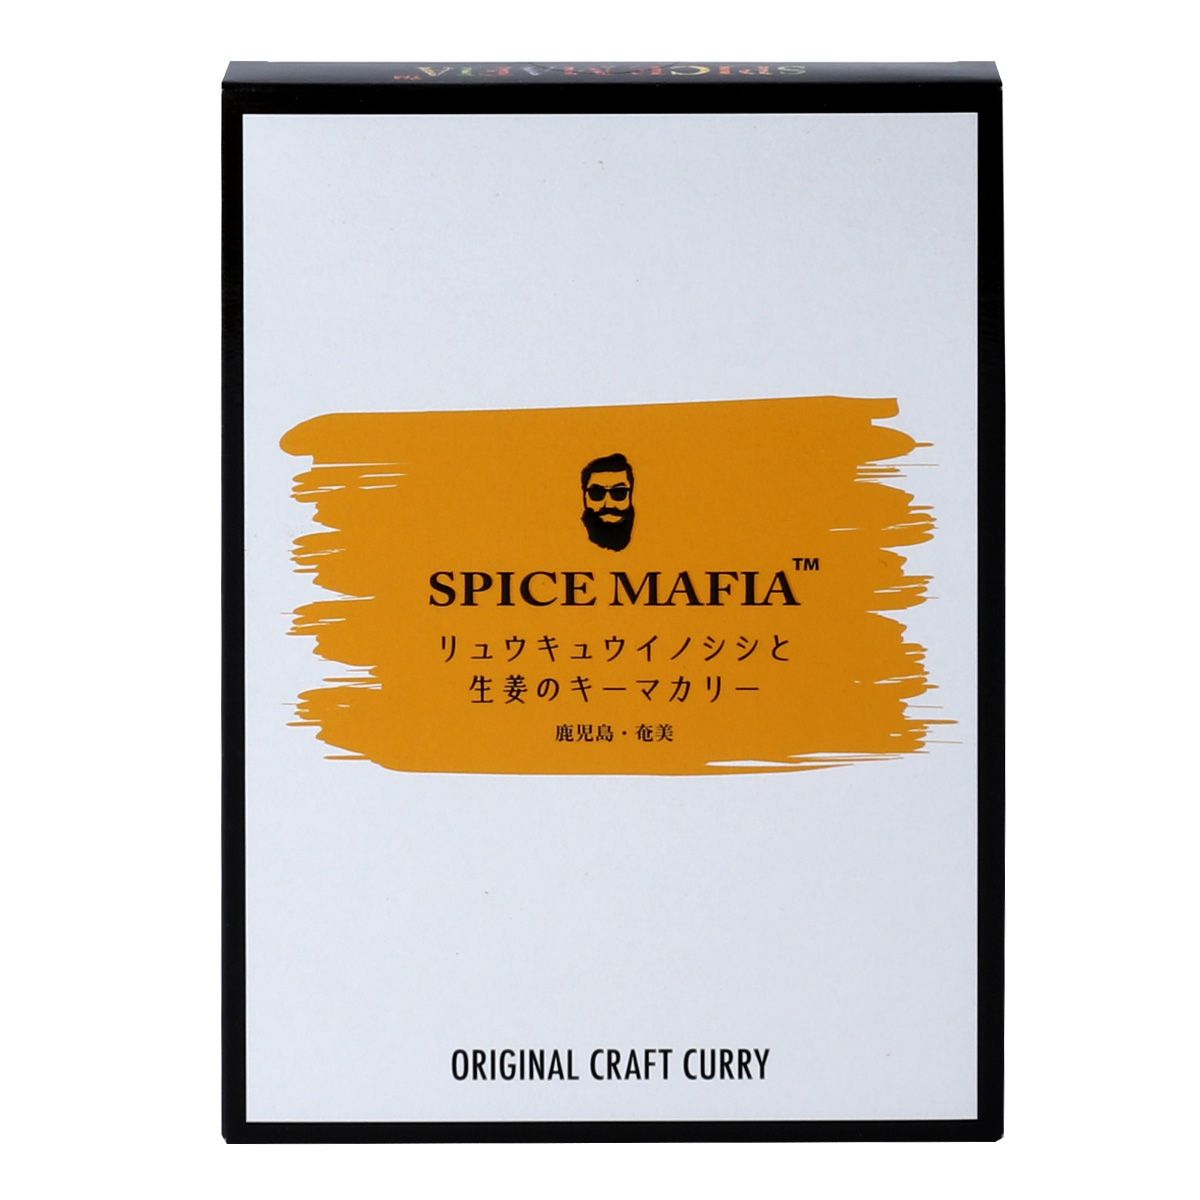 【SPICE MAFIA 】リュウキュウイノシシと生姜のキーマカリー 180g